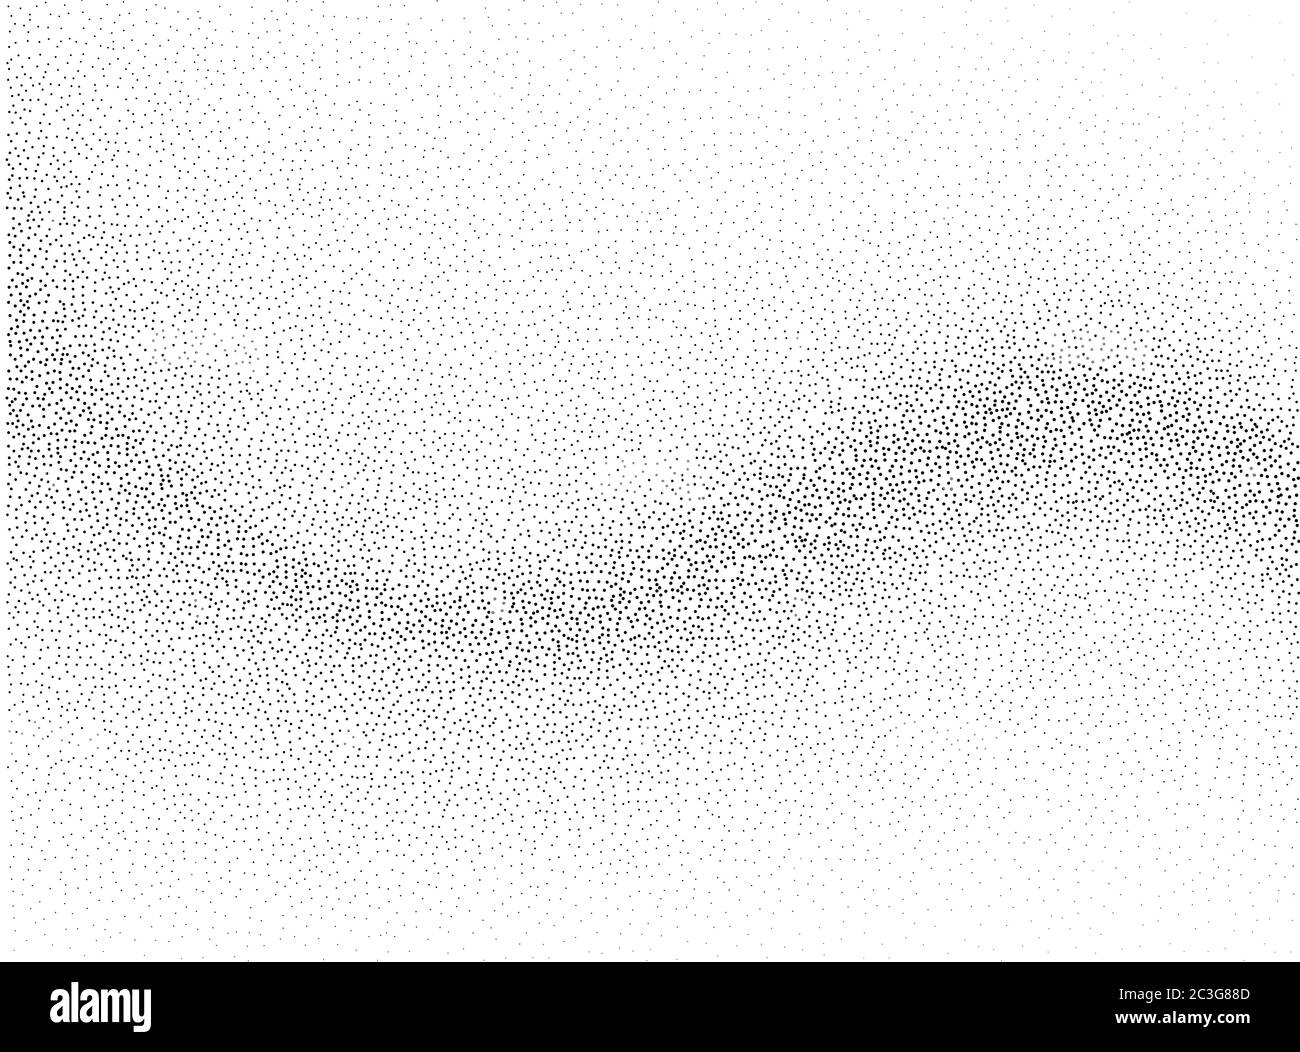 Abstrakter Vektor Hintergrund, monochromer Flow-Effekt für Design Broschüre, Website, Flyer. Stock Vektor